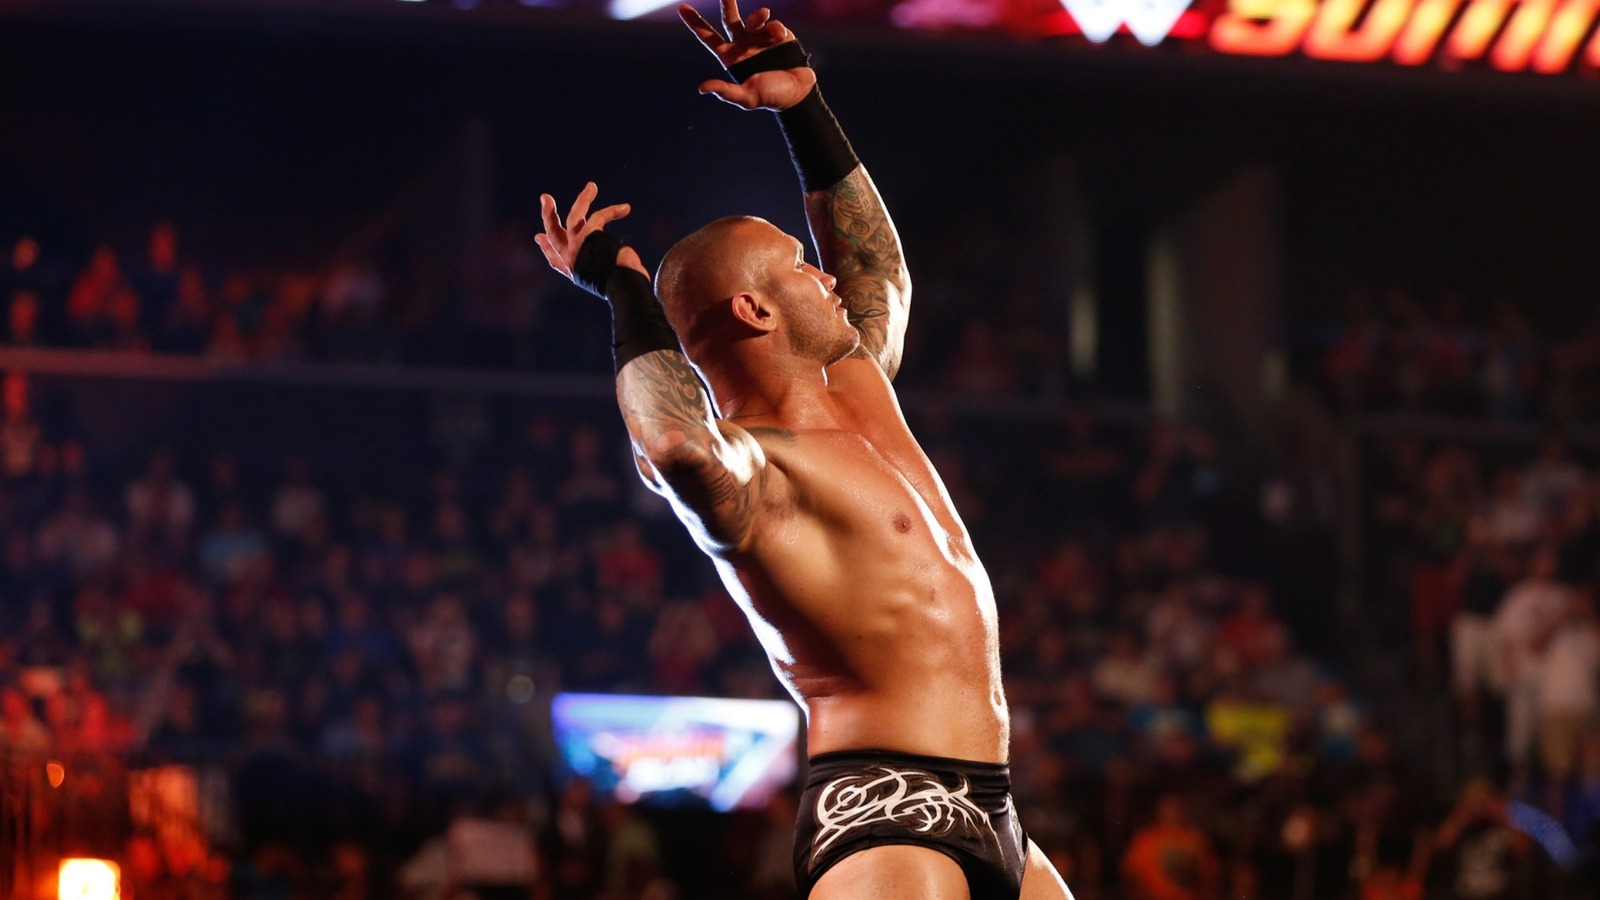 Randy Orton menciona un cambio positivo en la WWE bajo el régimen de Triple H